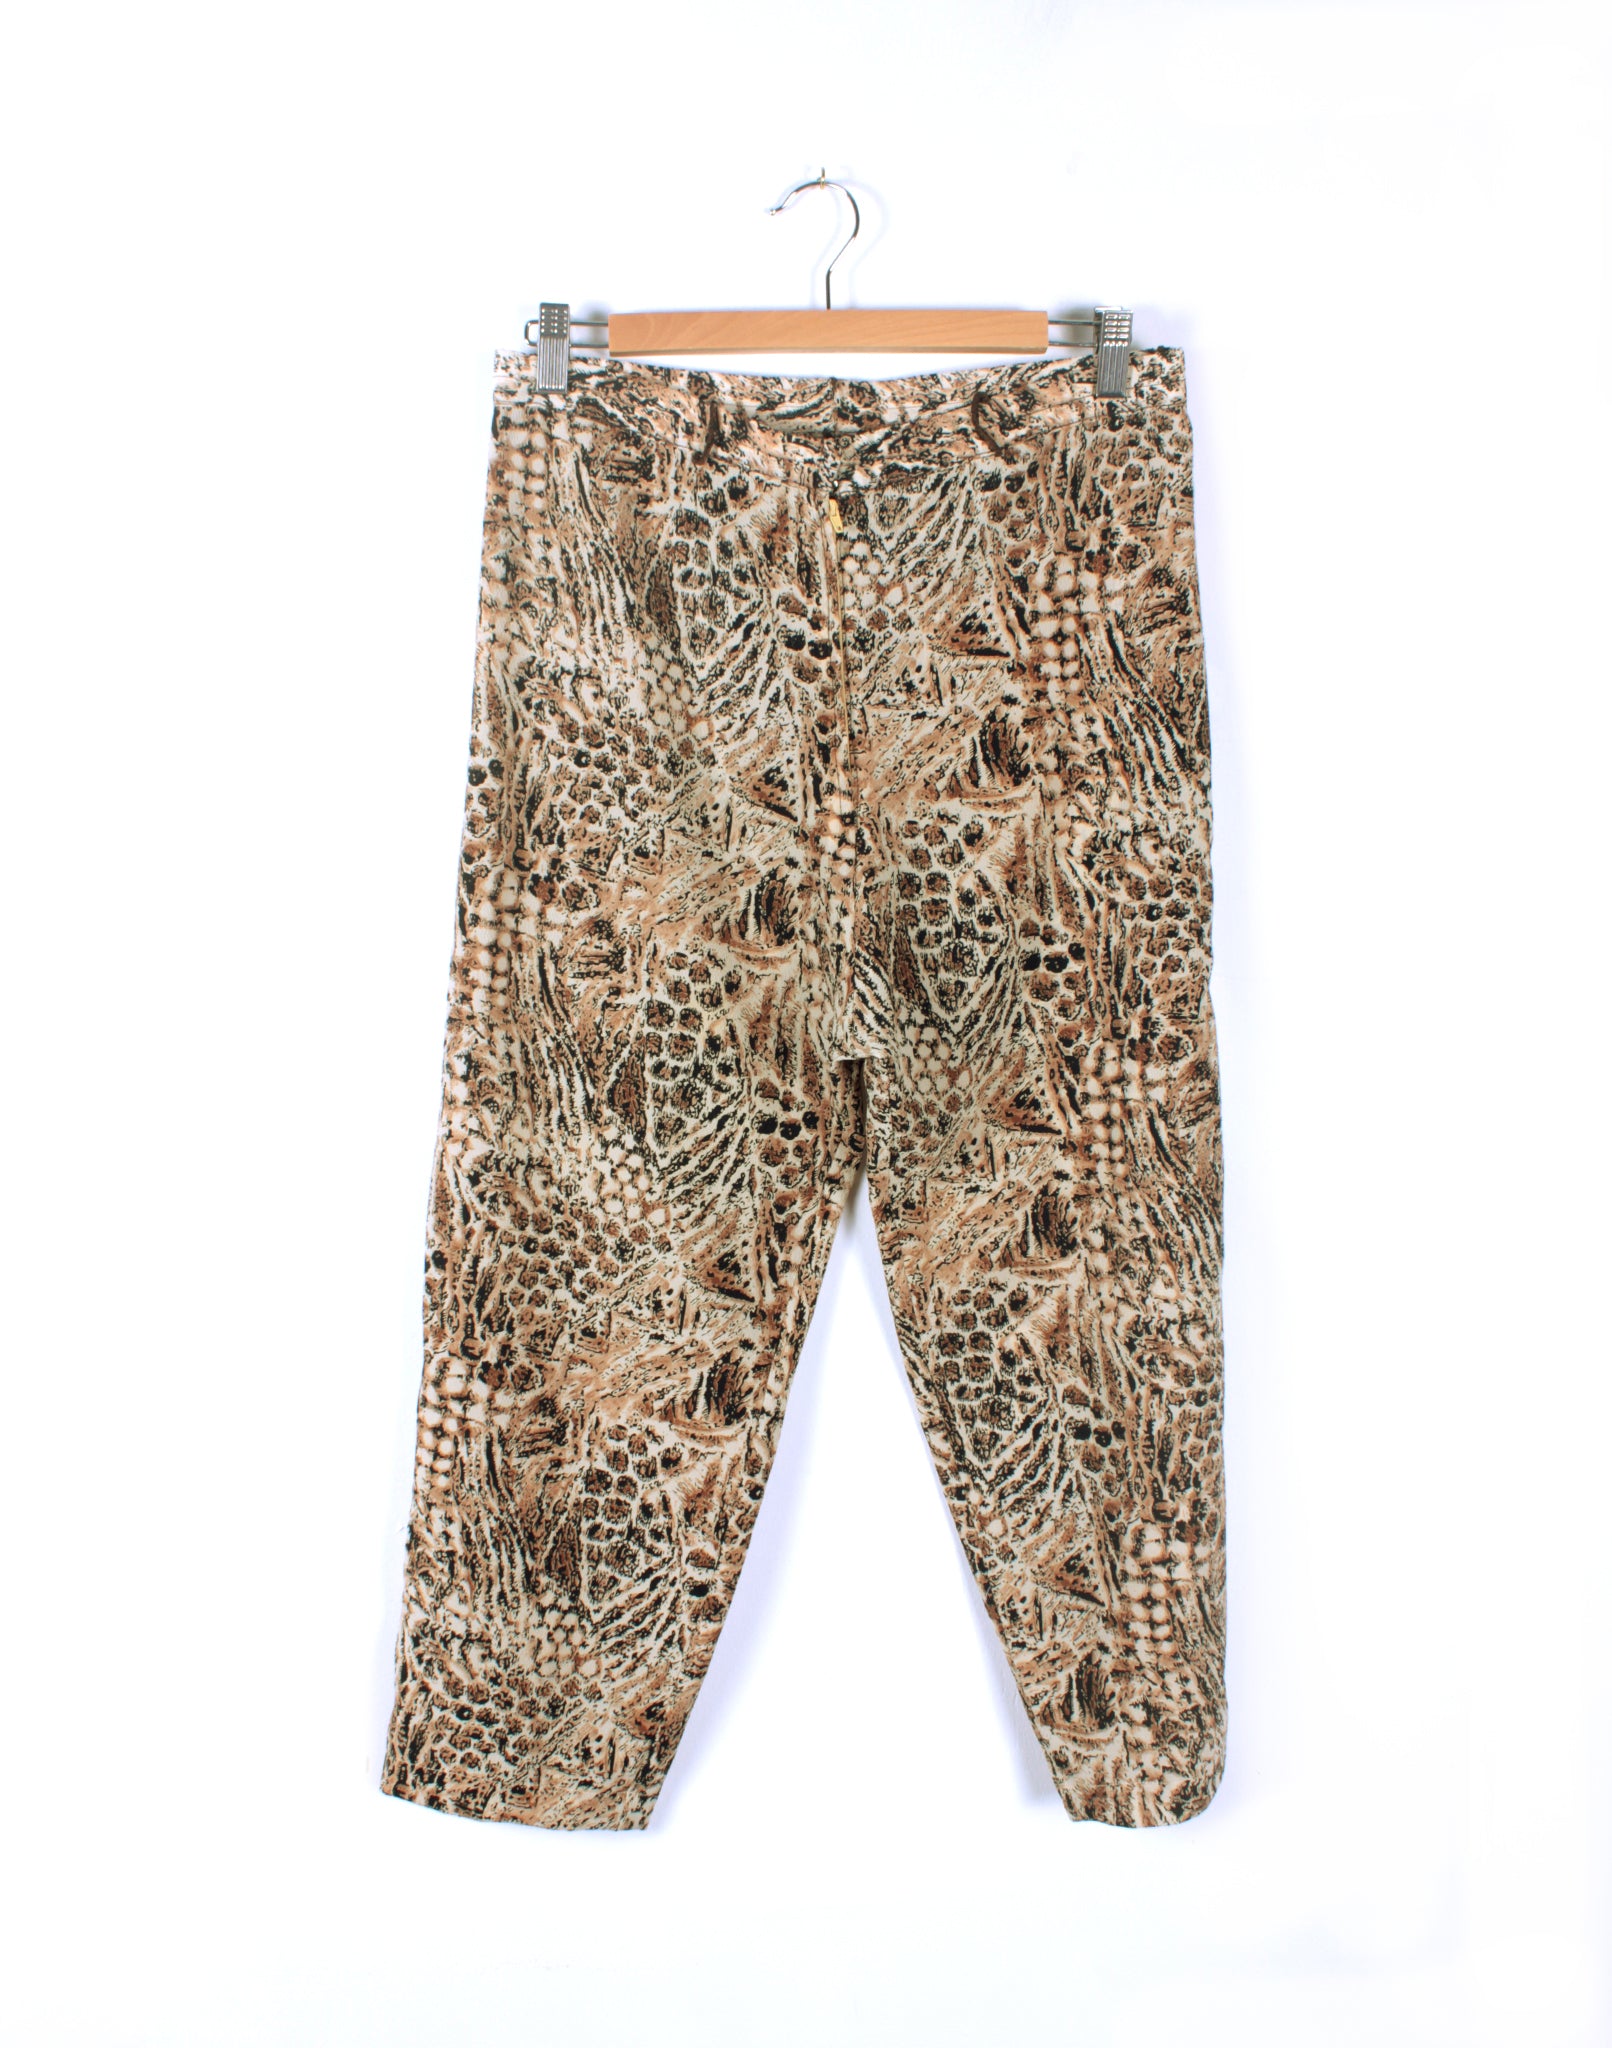 Vintage 80's Leopard Capri Pants